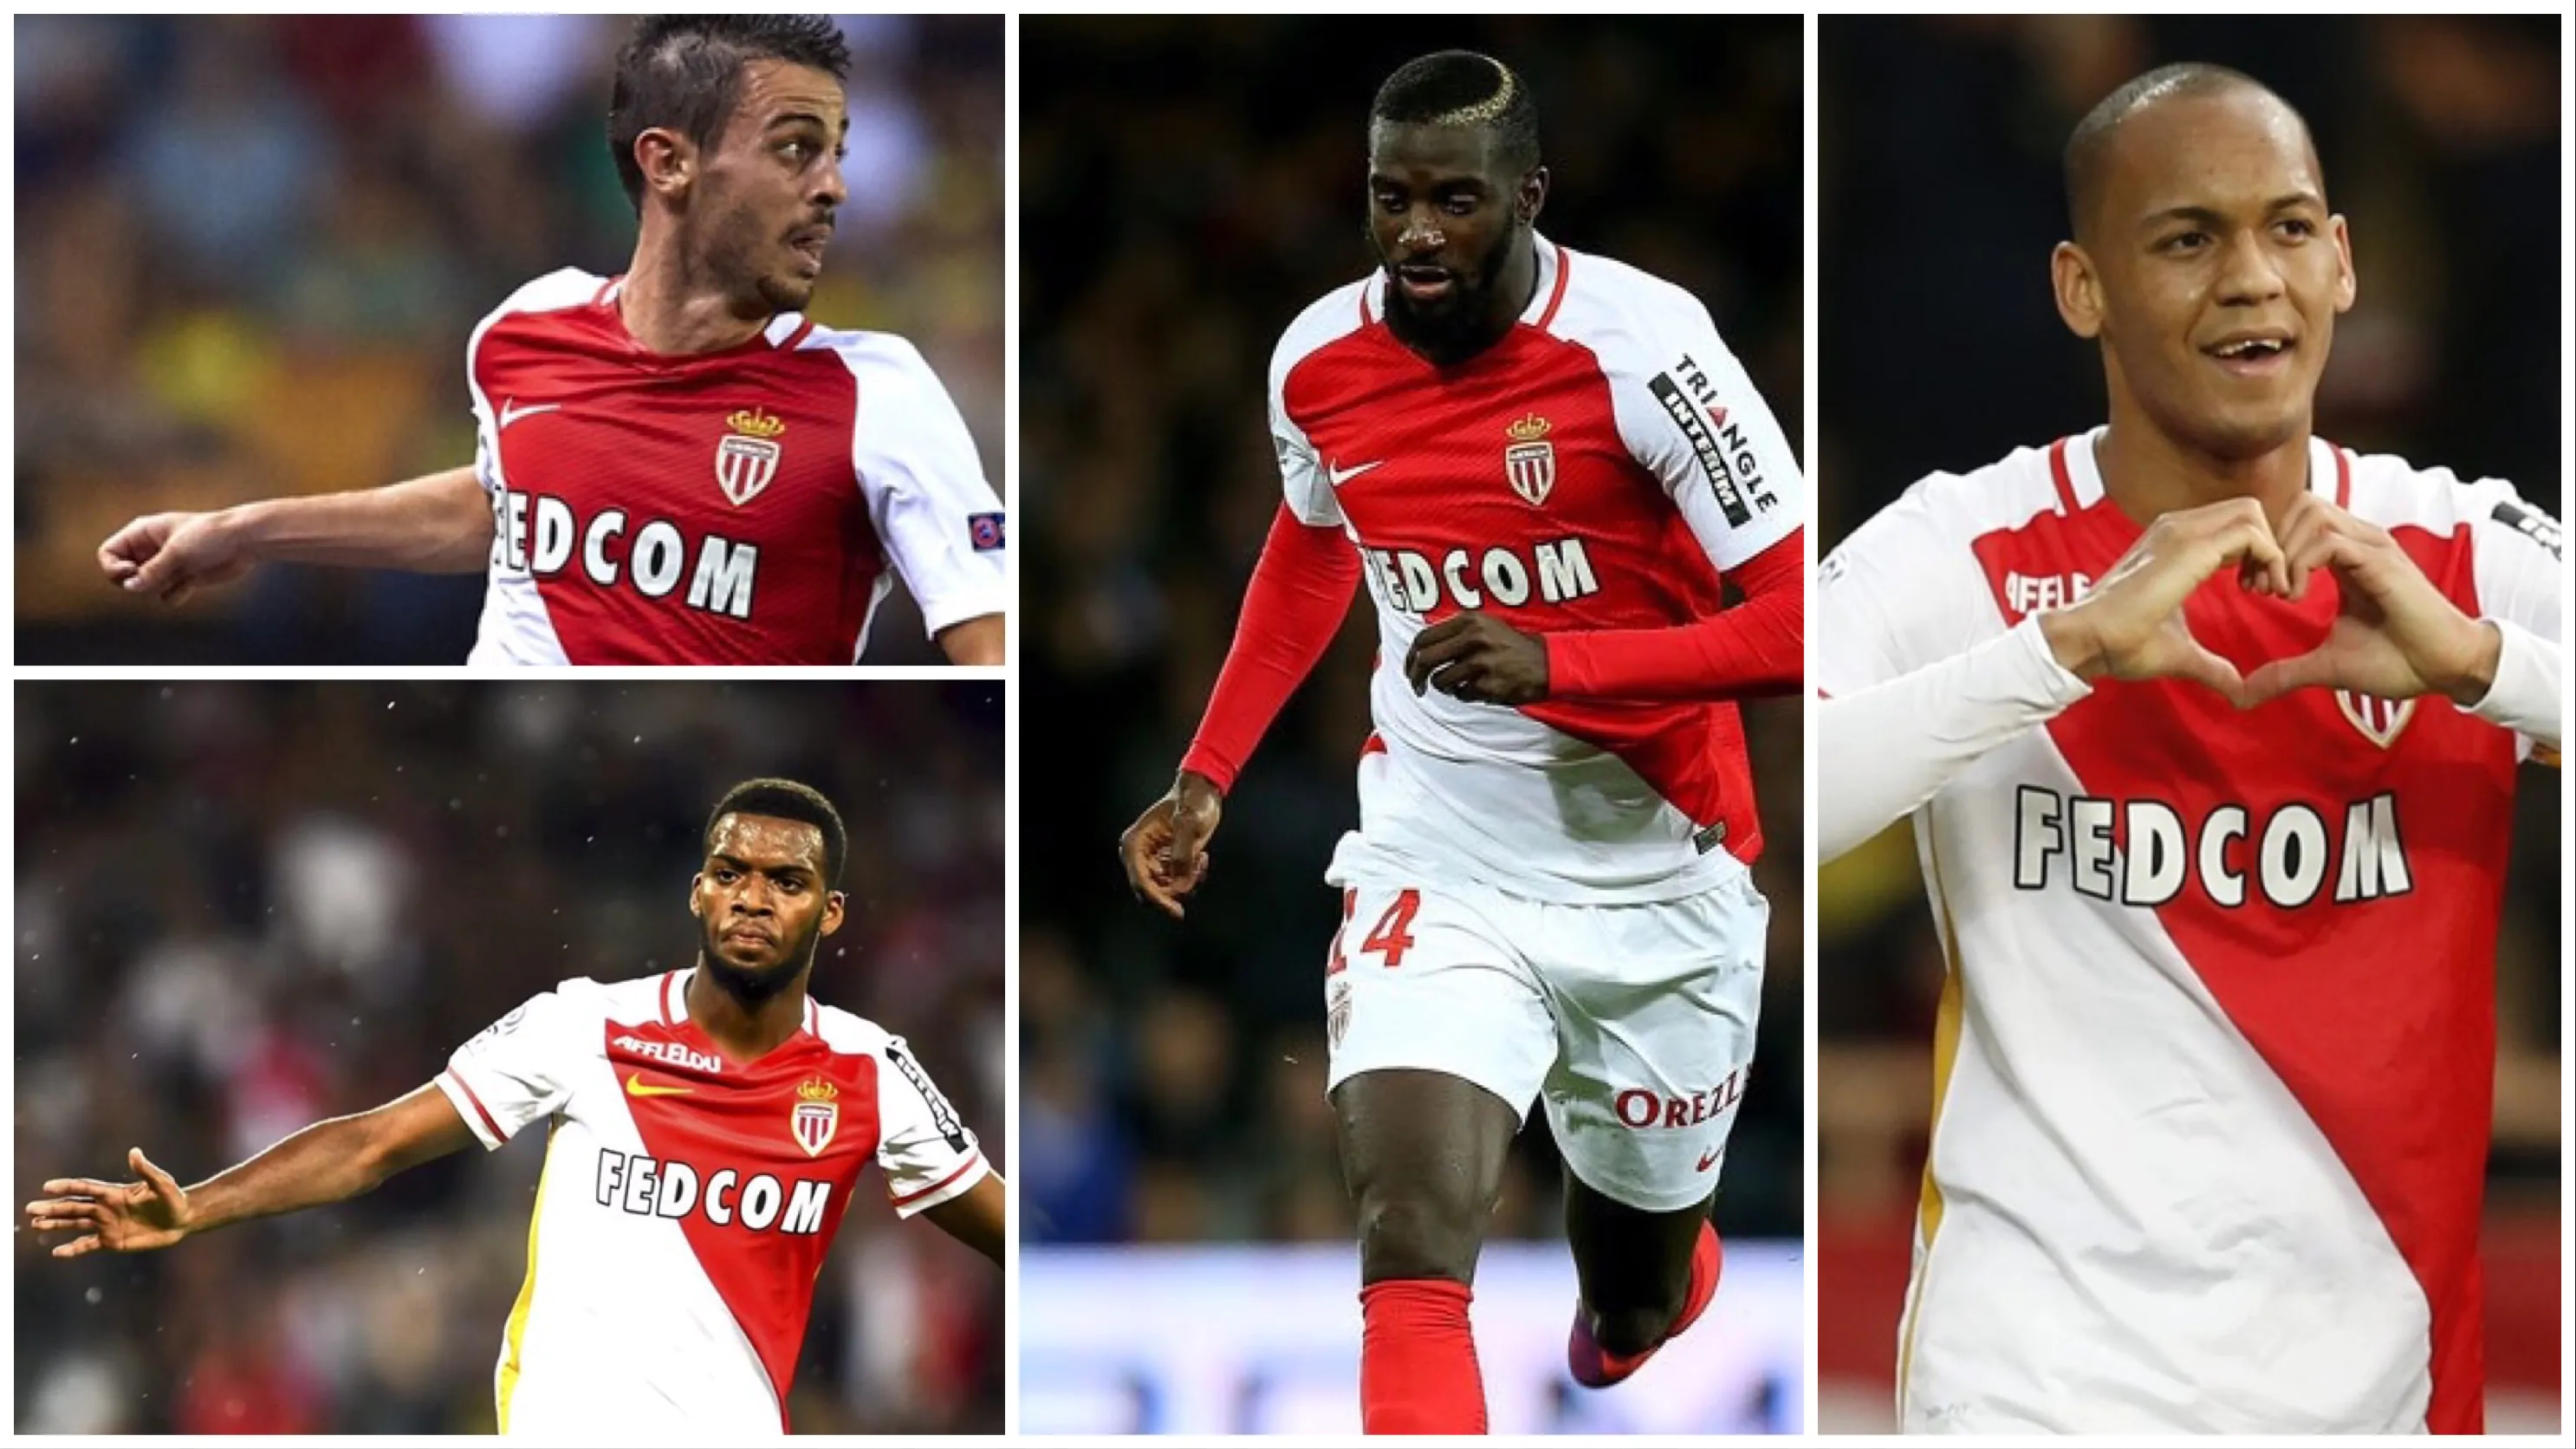 Monaco: ecco i magnifici 4 che spaventano la Juve e piacciono a mezza Europa